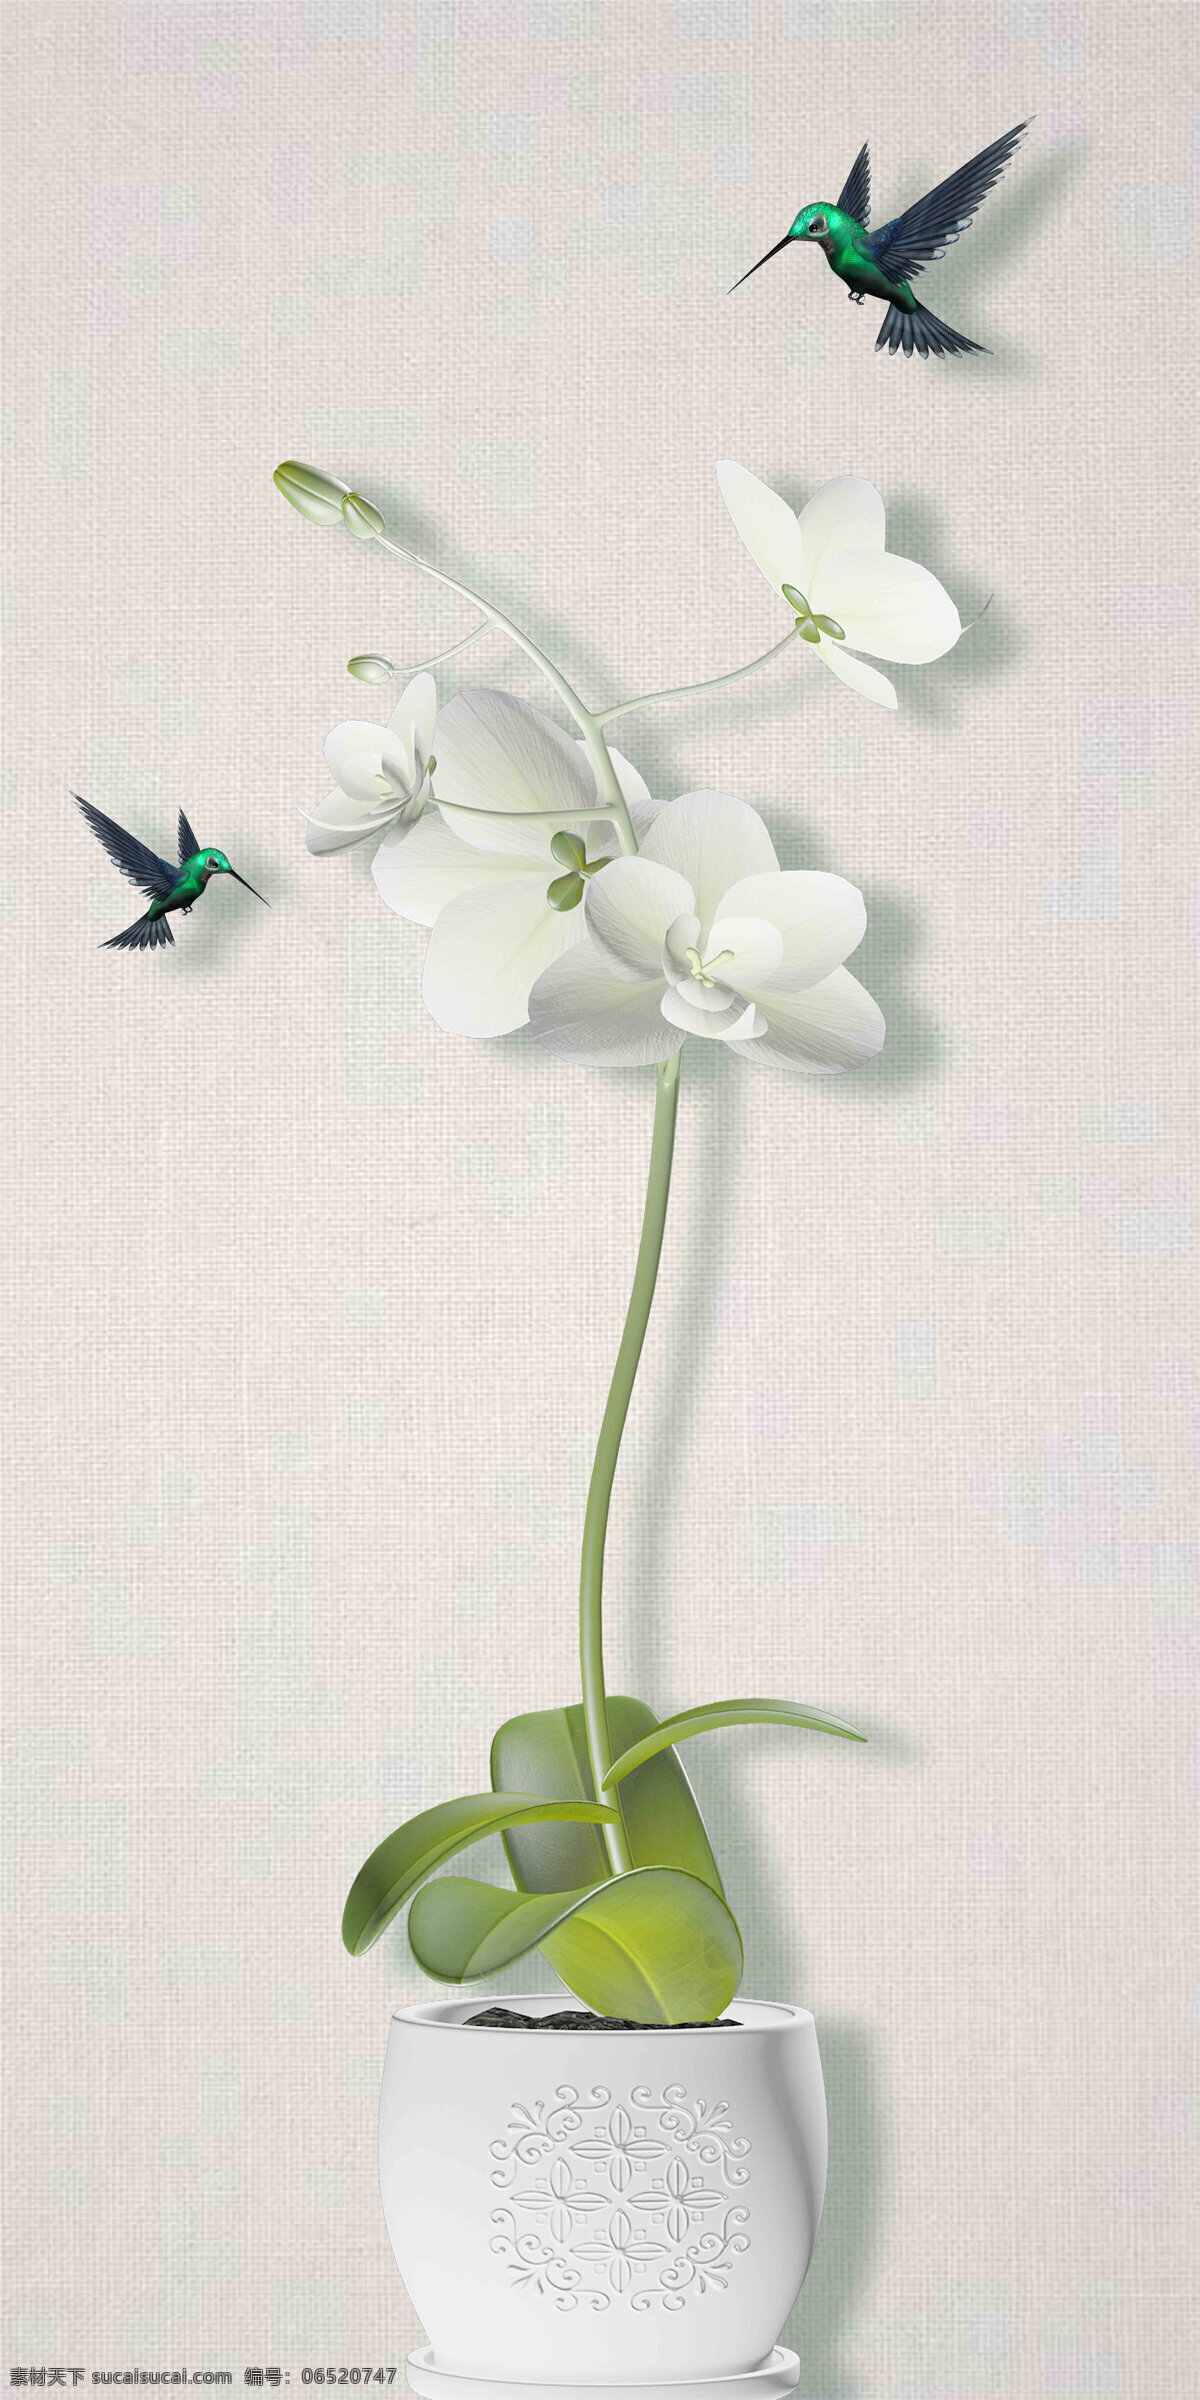 新 中式 装饰画 背景 鸟 玉兰 花瓶 叶子 浮雕